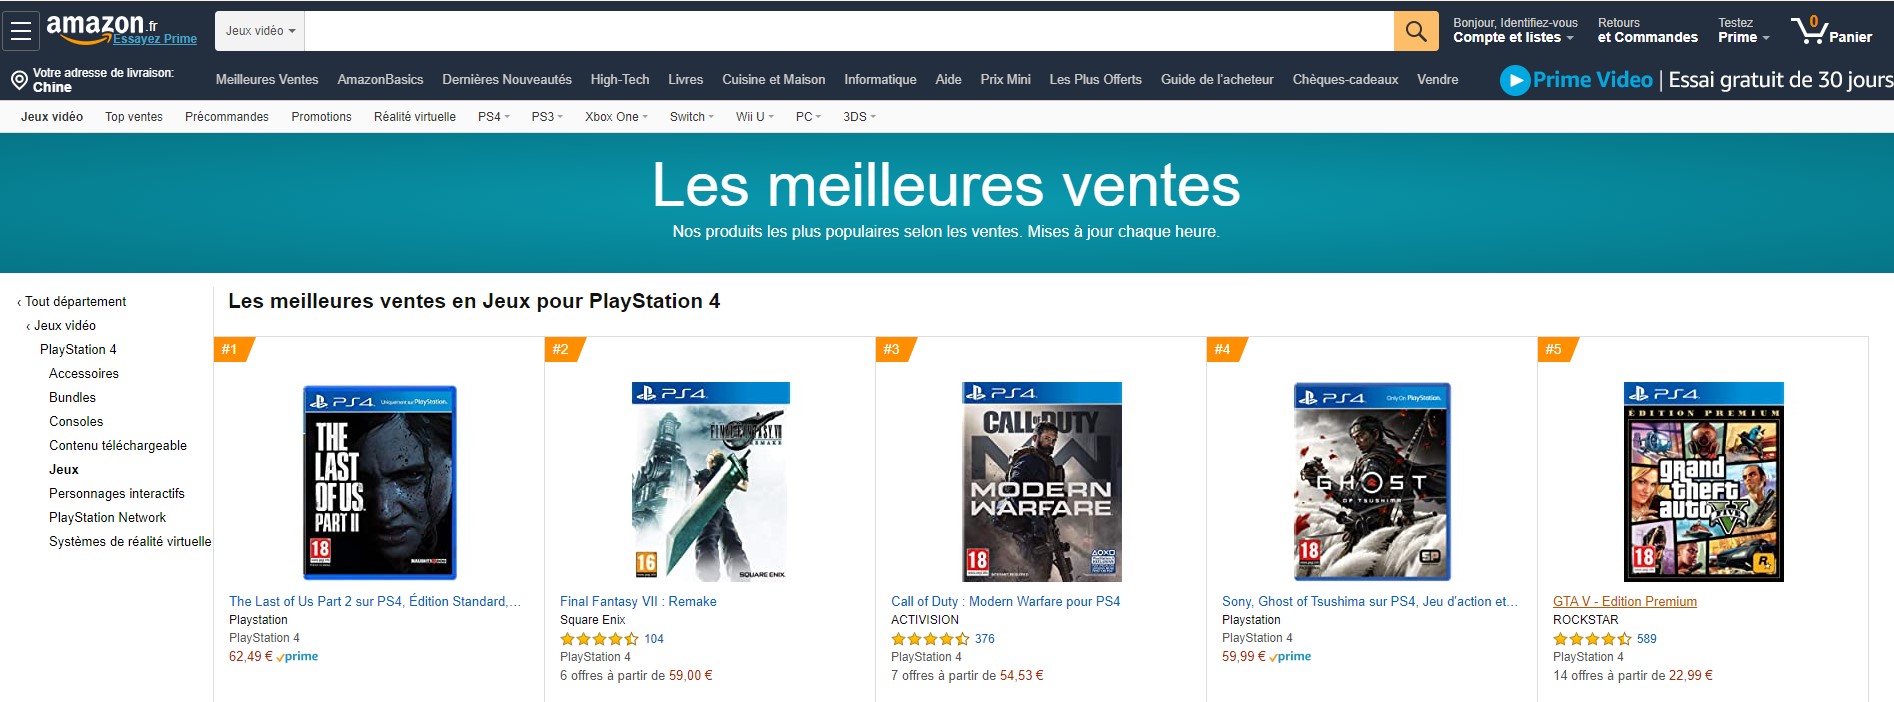 《最后的生还者2》英国法国亚马逊销量位列第一